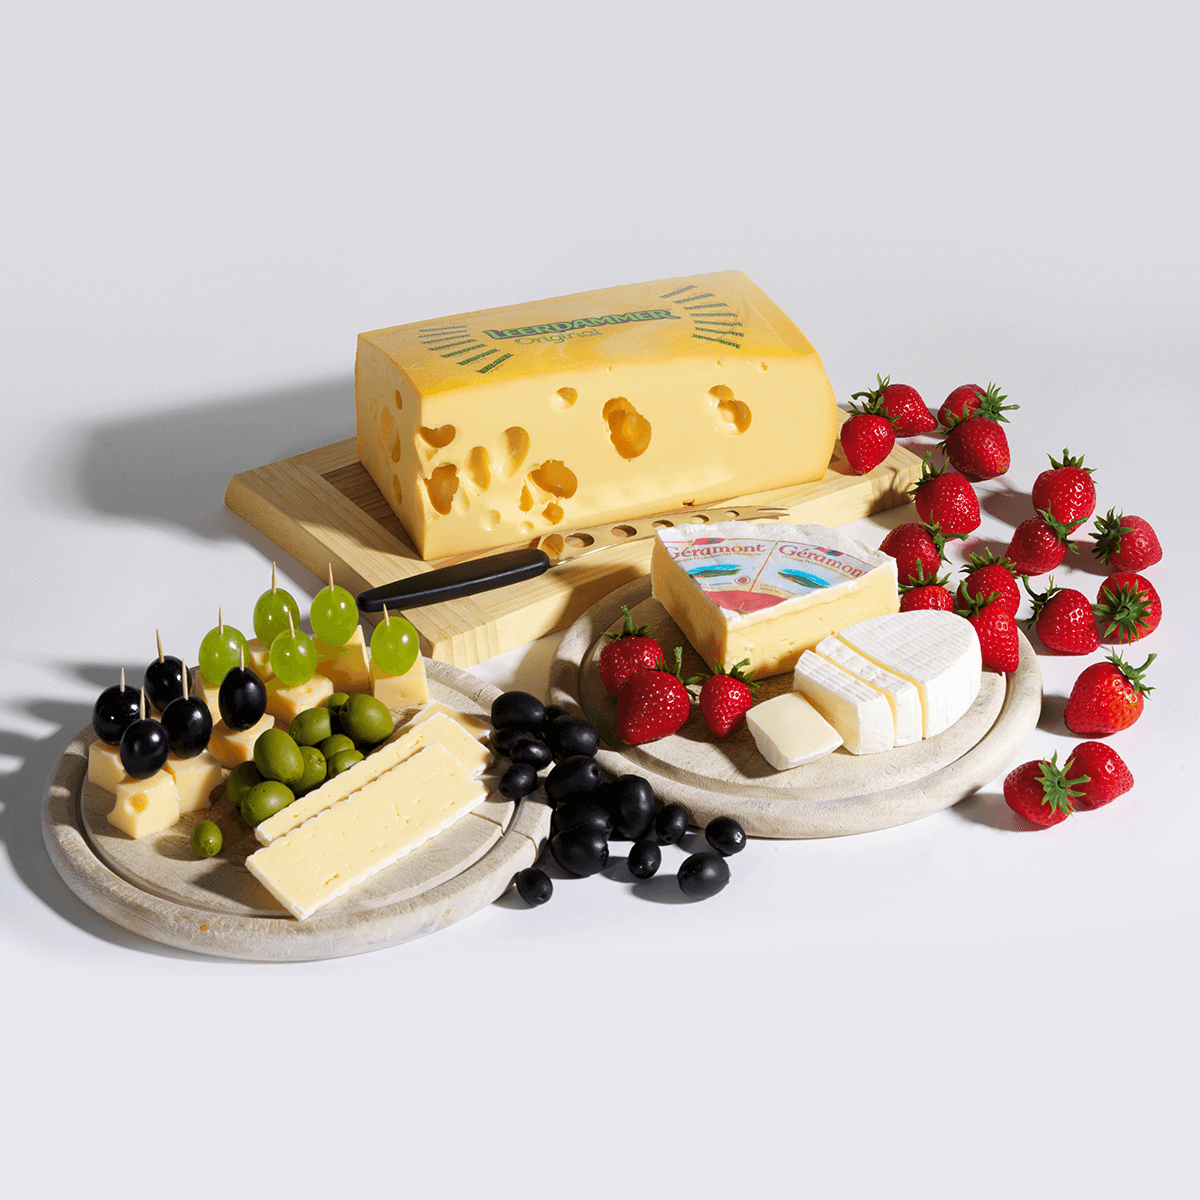 Leerdamer cheese slices food replica 24 cm | DecoWoerner